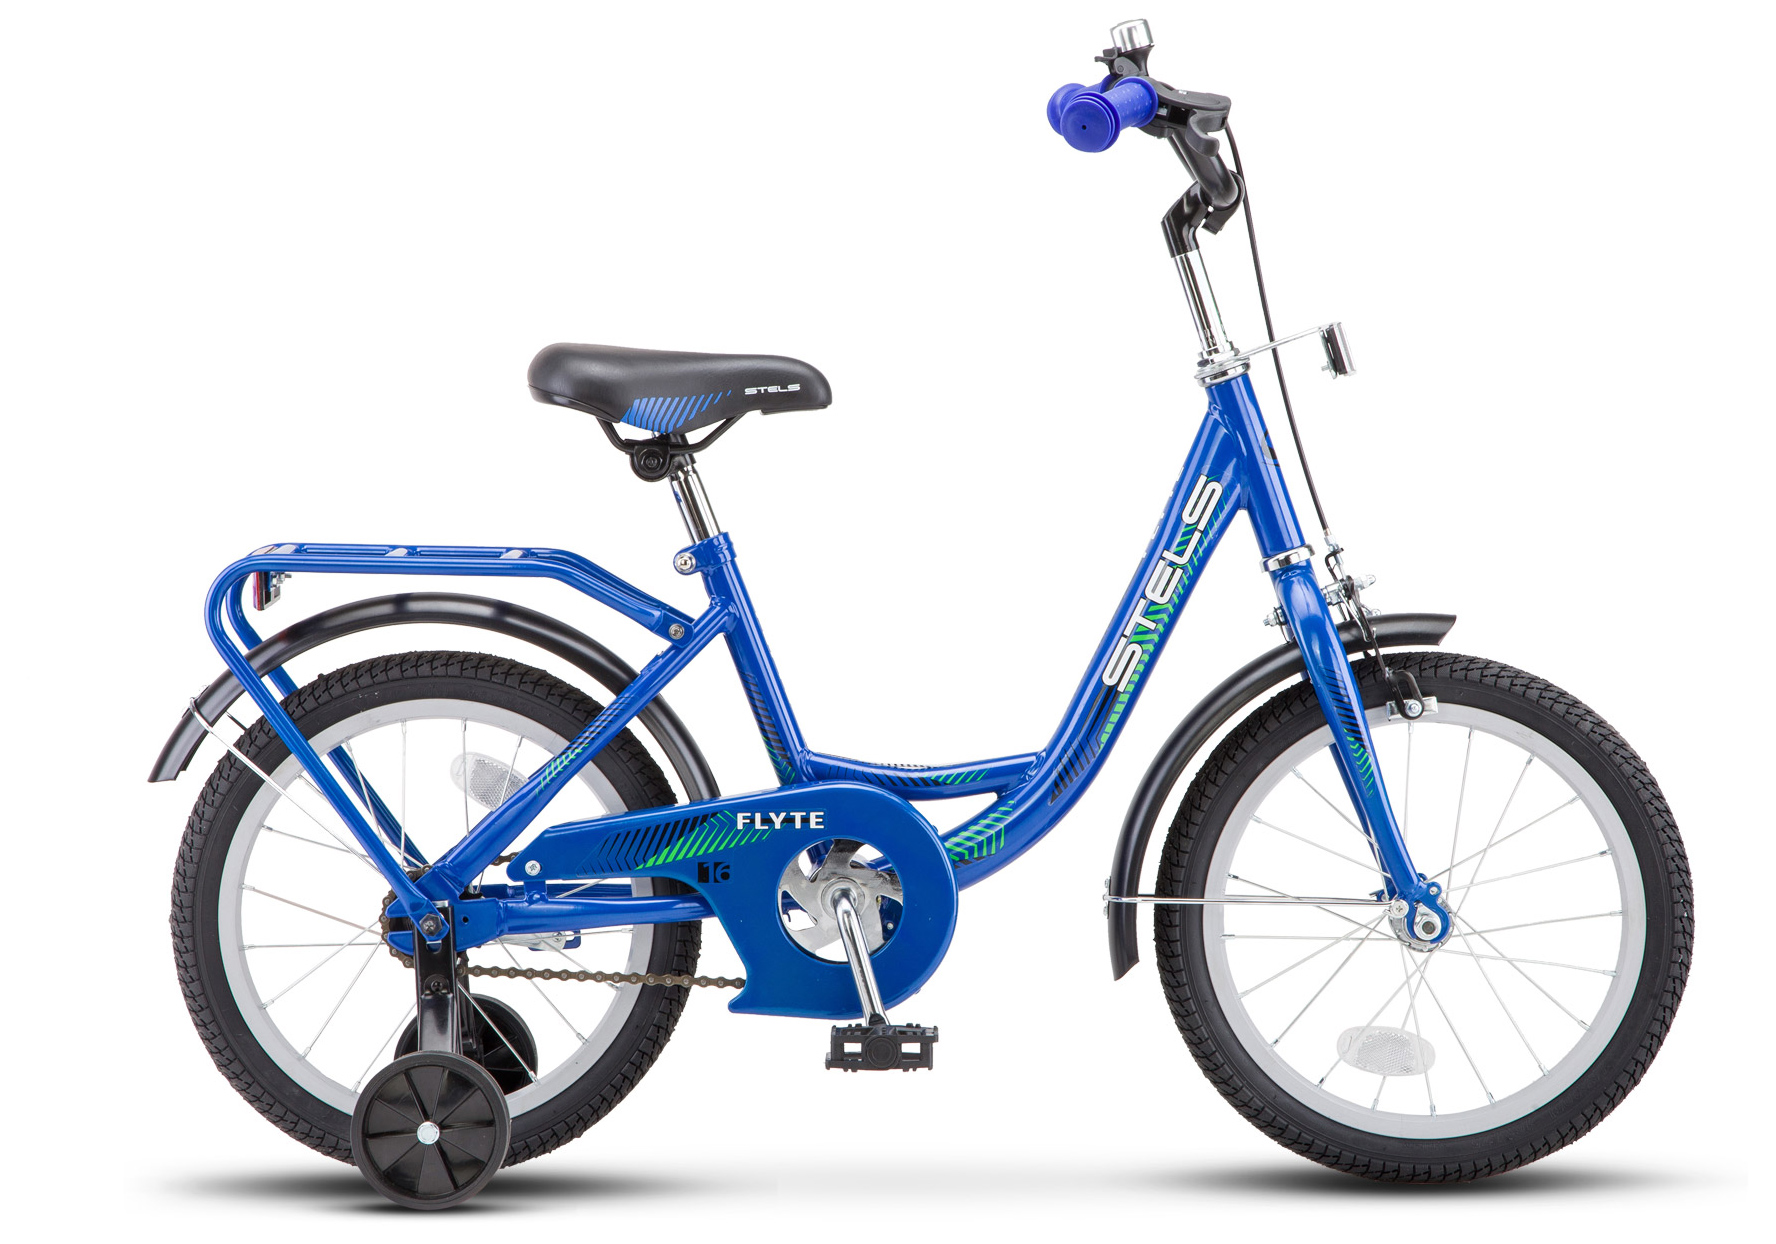  Велосипед трехколесный детский велосипед Stels Flyte 16 (Z011) 2019